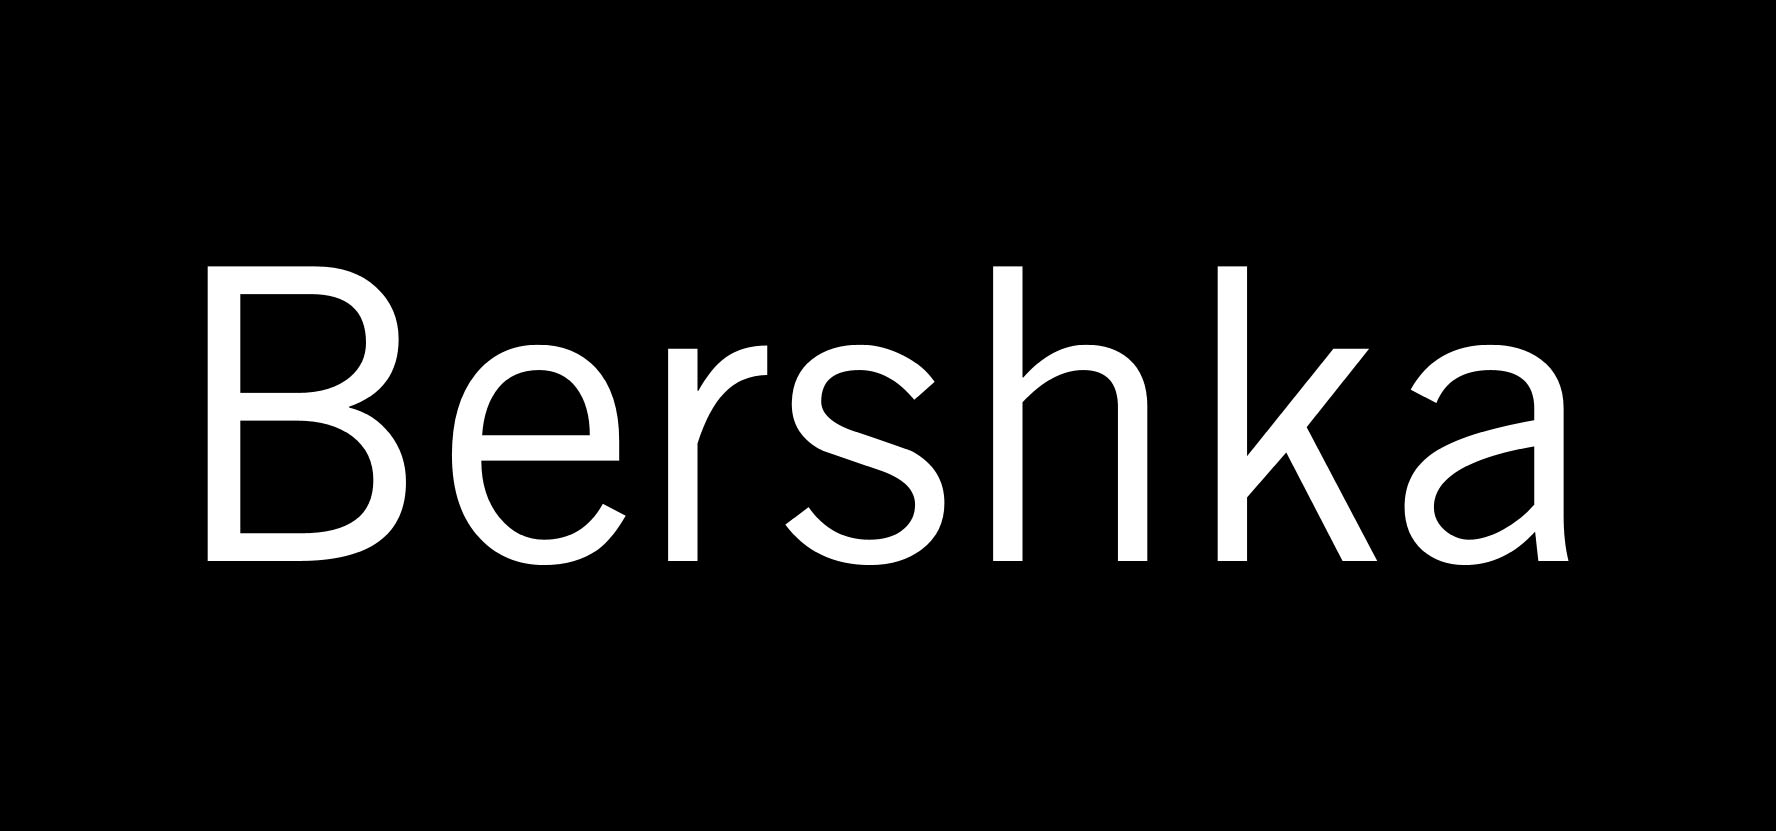 bershka-logo